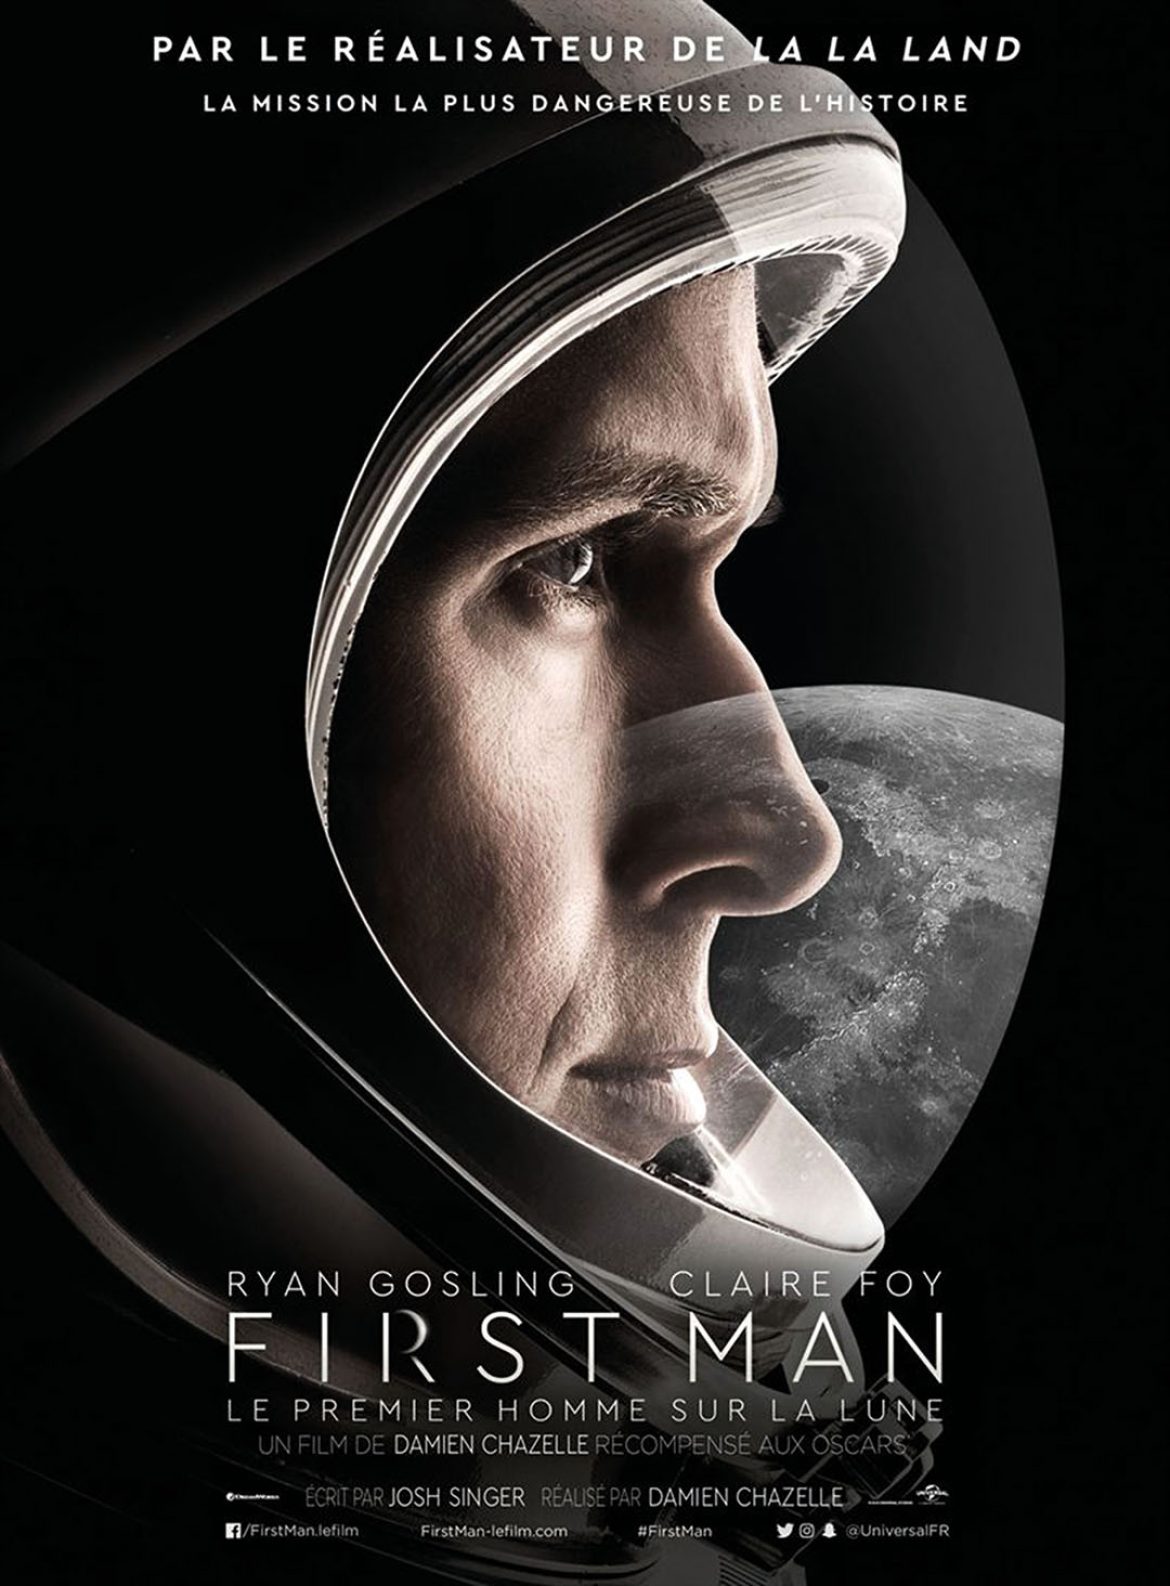 First man Le premier homme sur la Lune